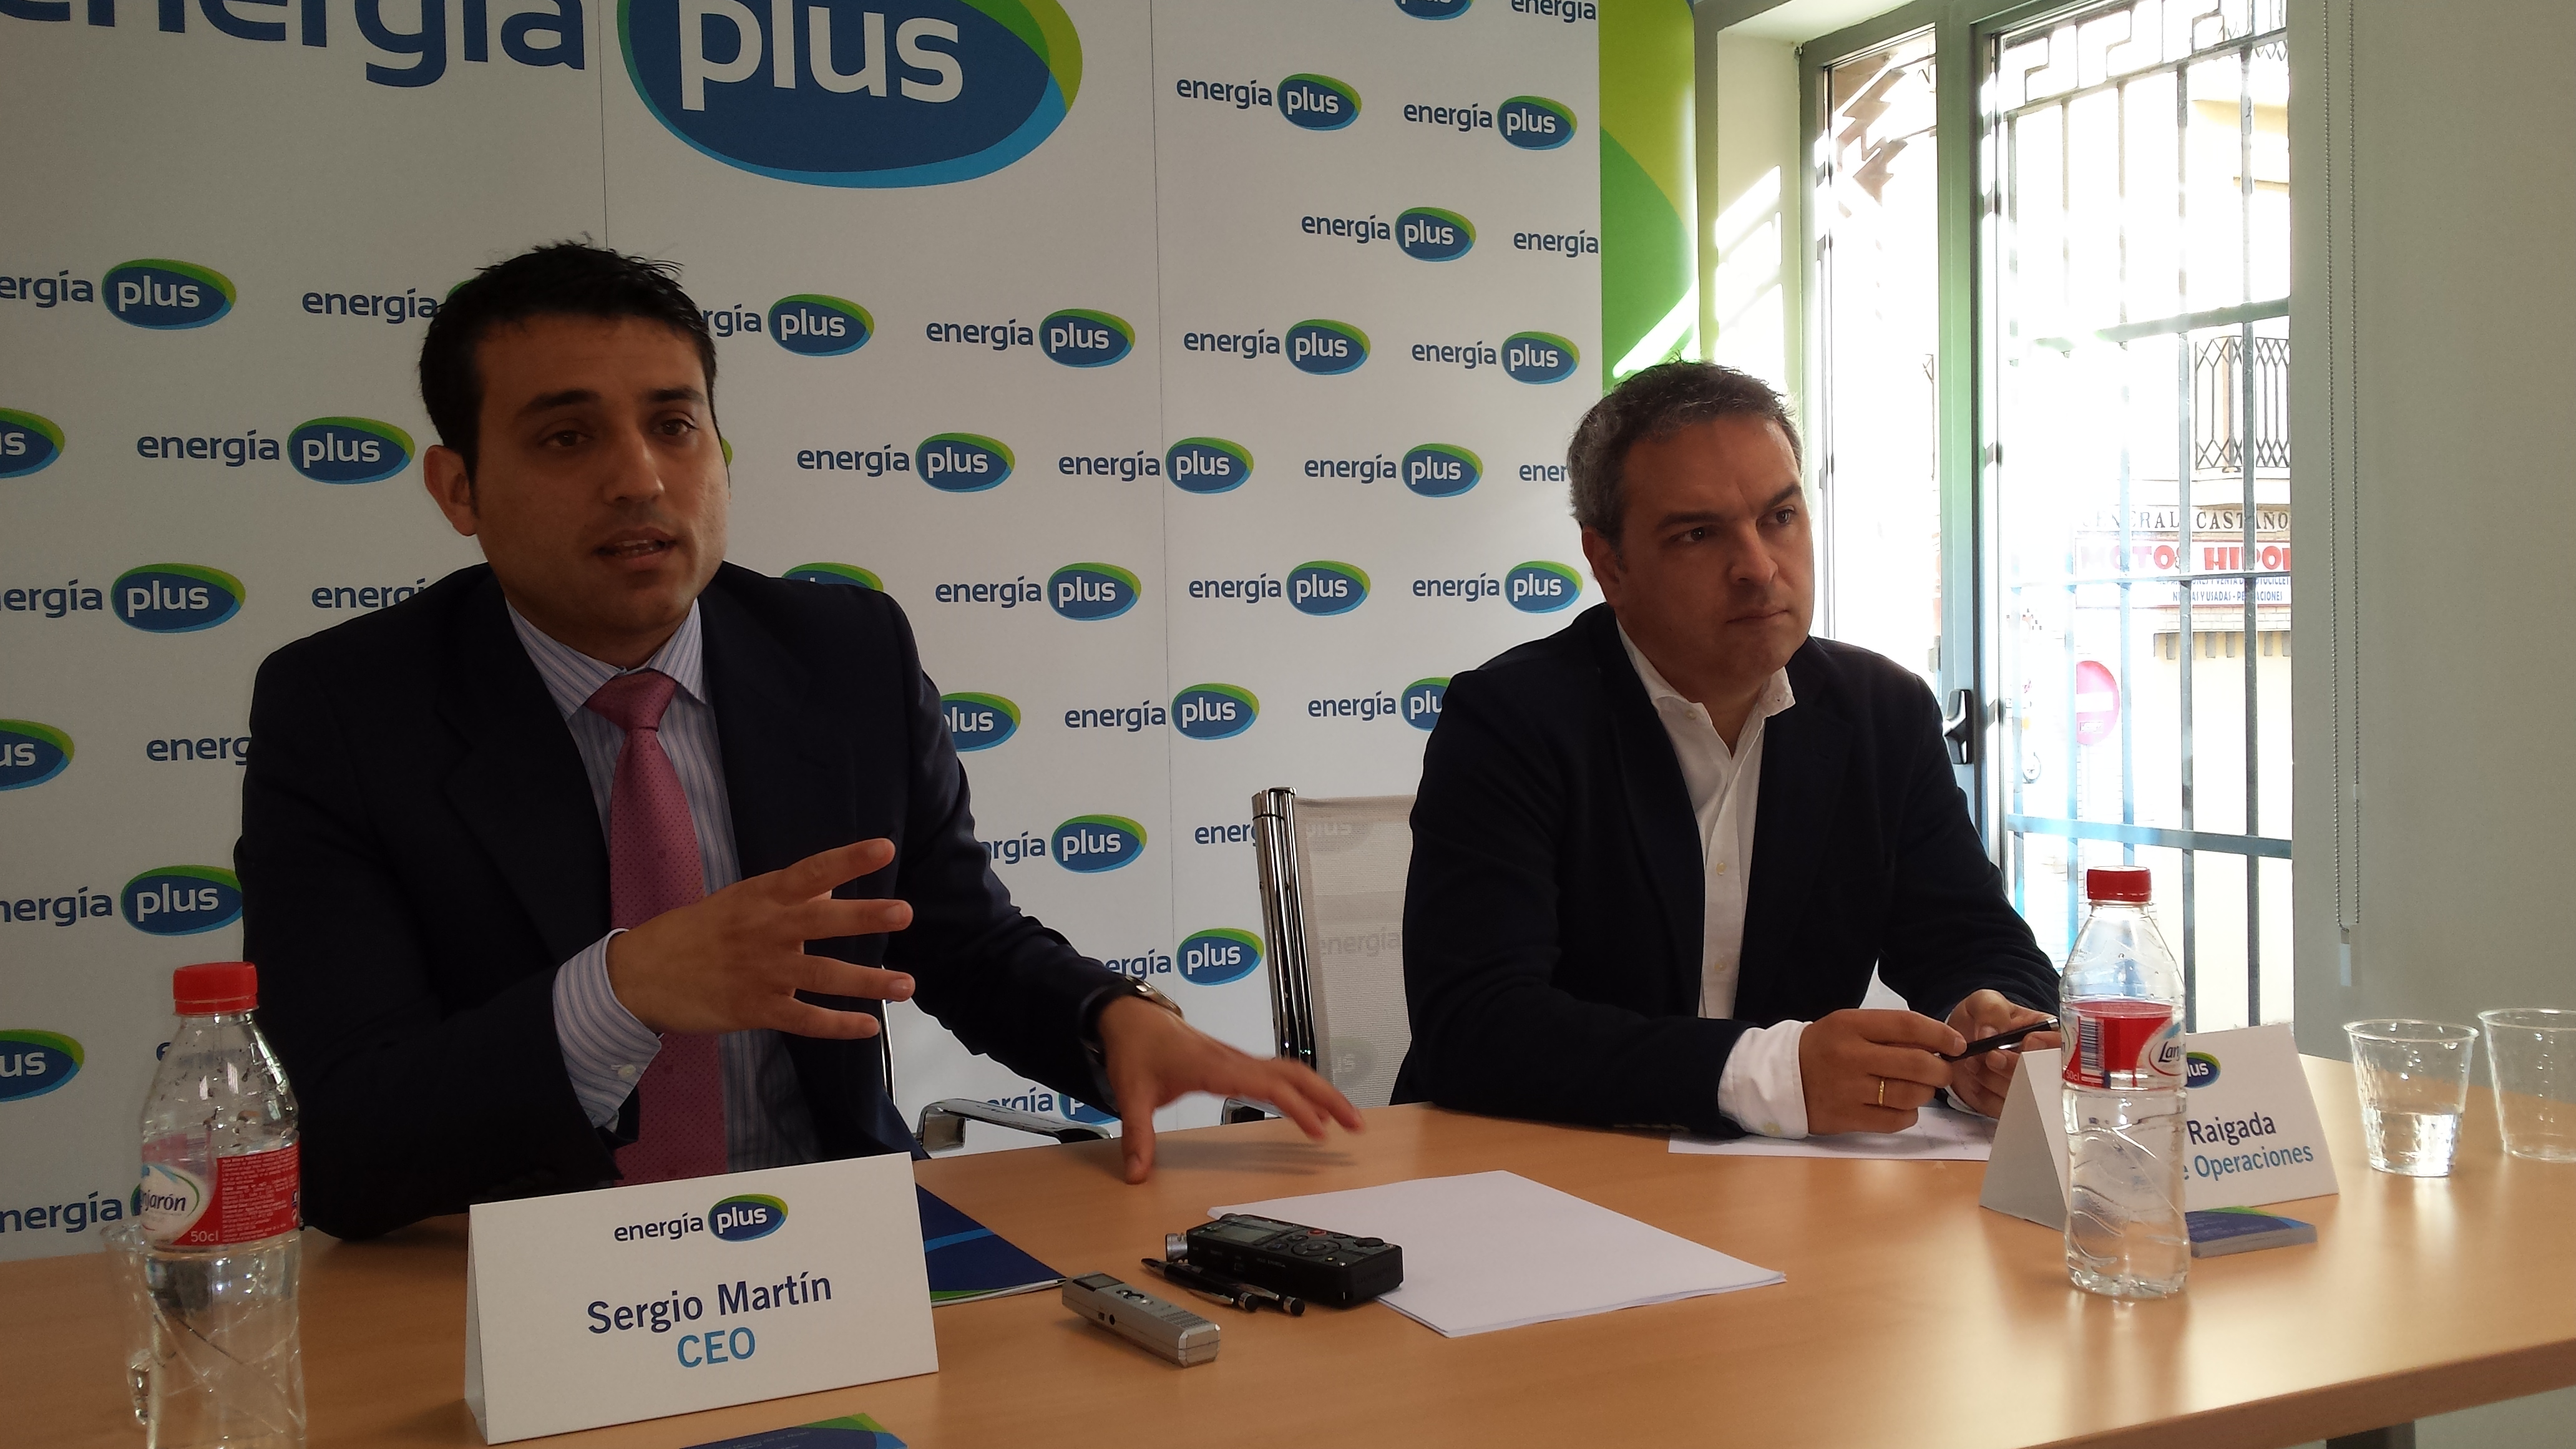 A la izquierda, Sergio Martín, CEO de Energía Plus. A la derecha, Manuel Raigada, director de Operaciones de Energía Plus.